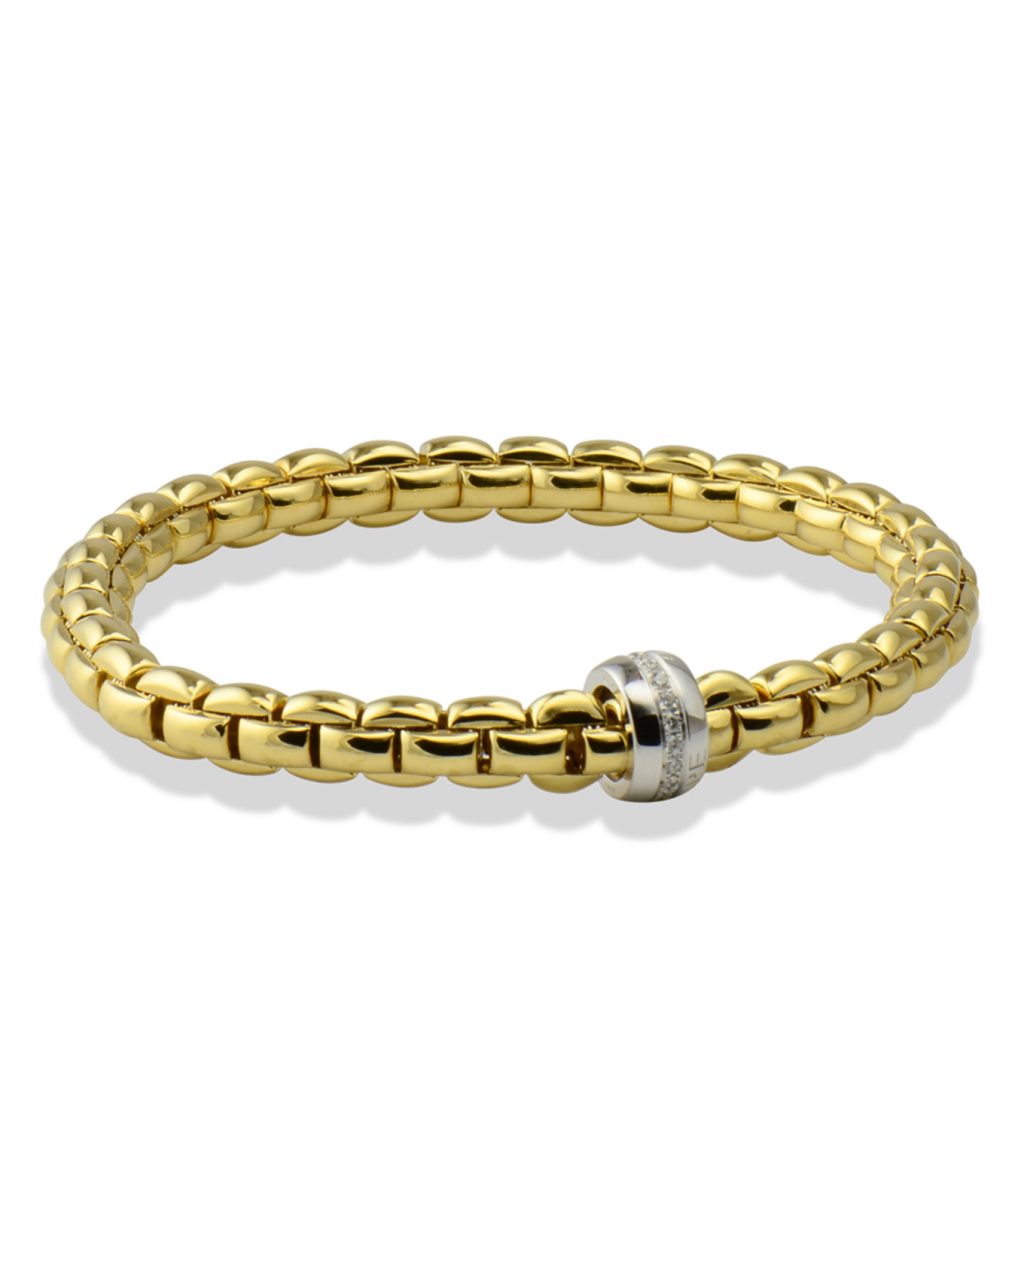 Flexible gold bracelet by Fope